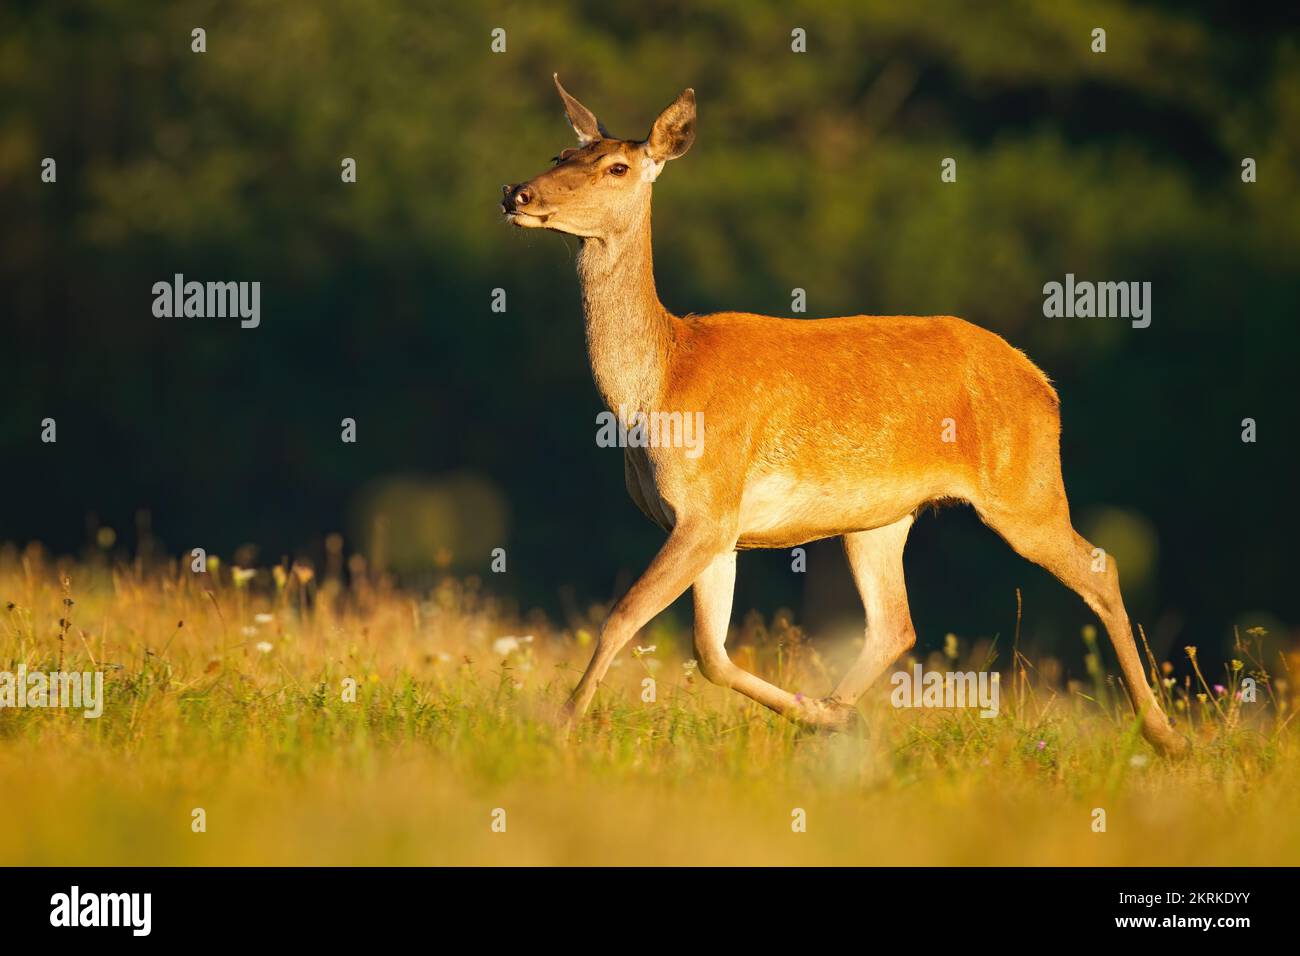 Ciervo rojo corriendo sobre el pasto en verano bajo la luz del sol Foto de stock